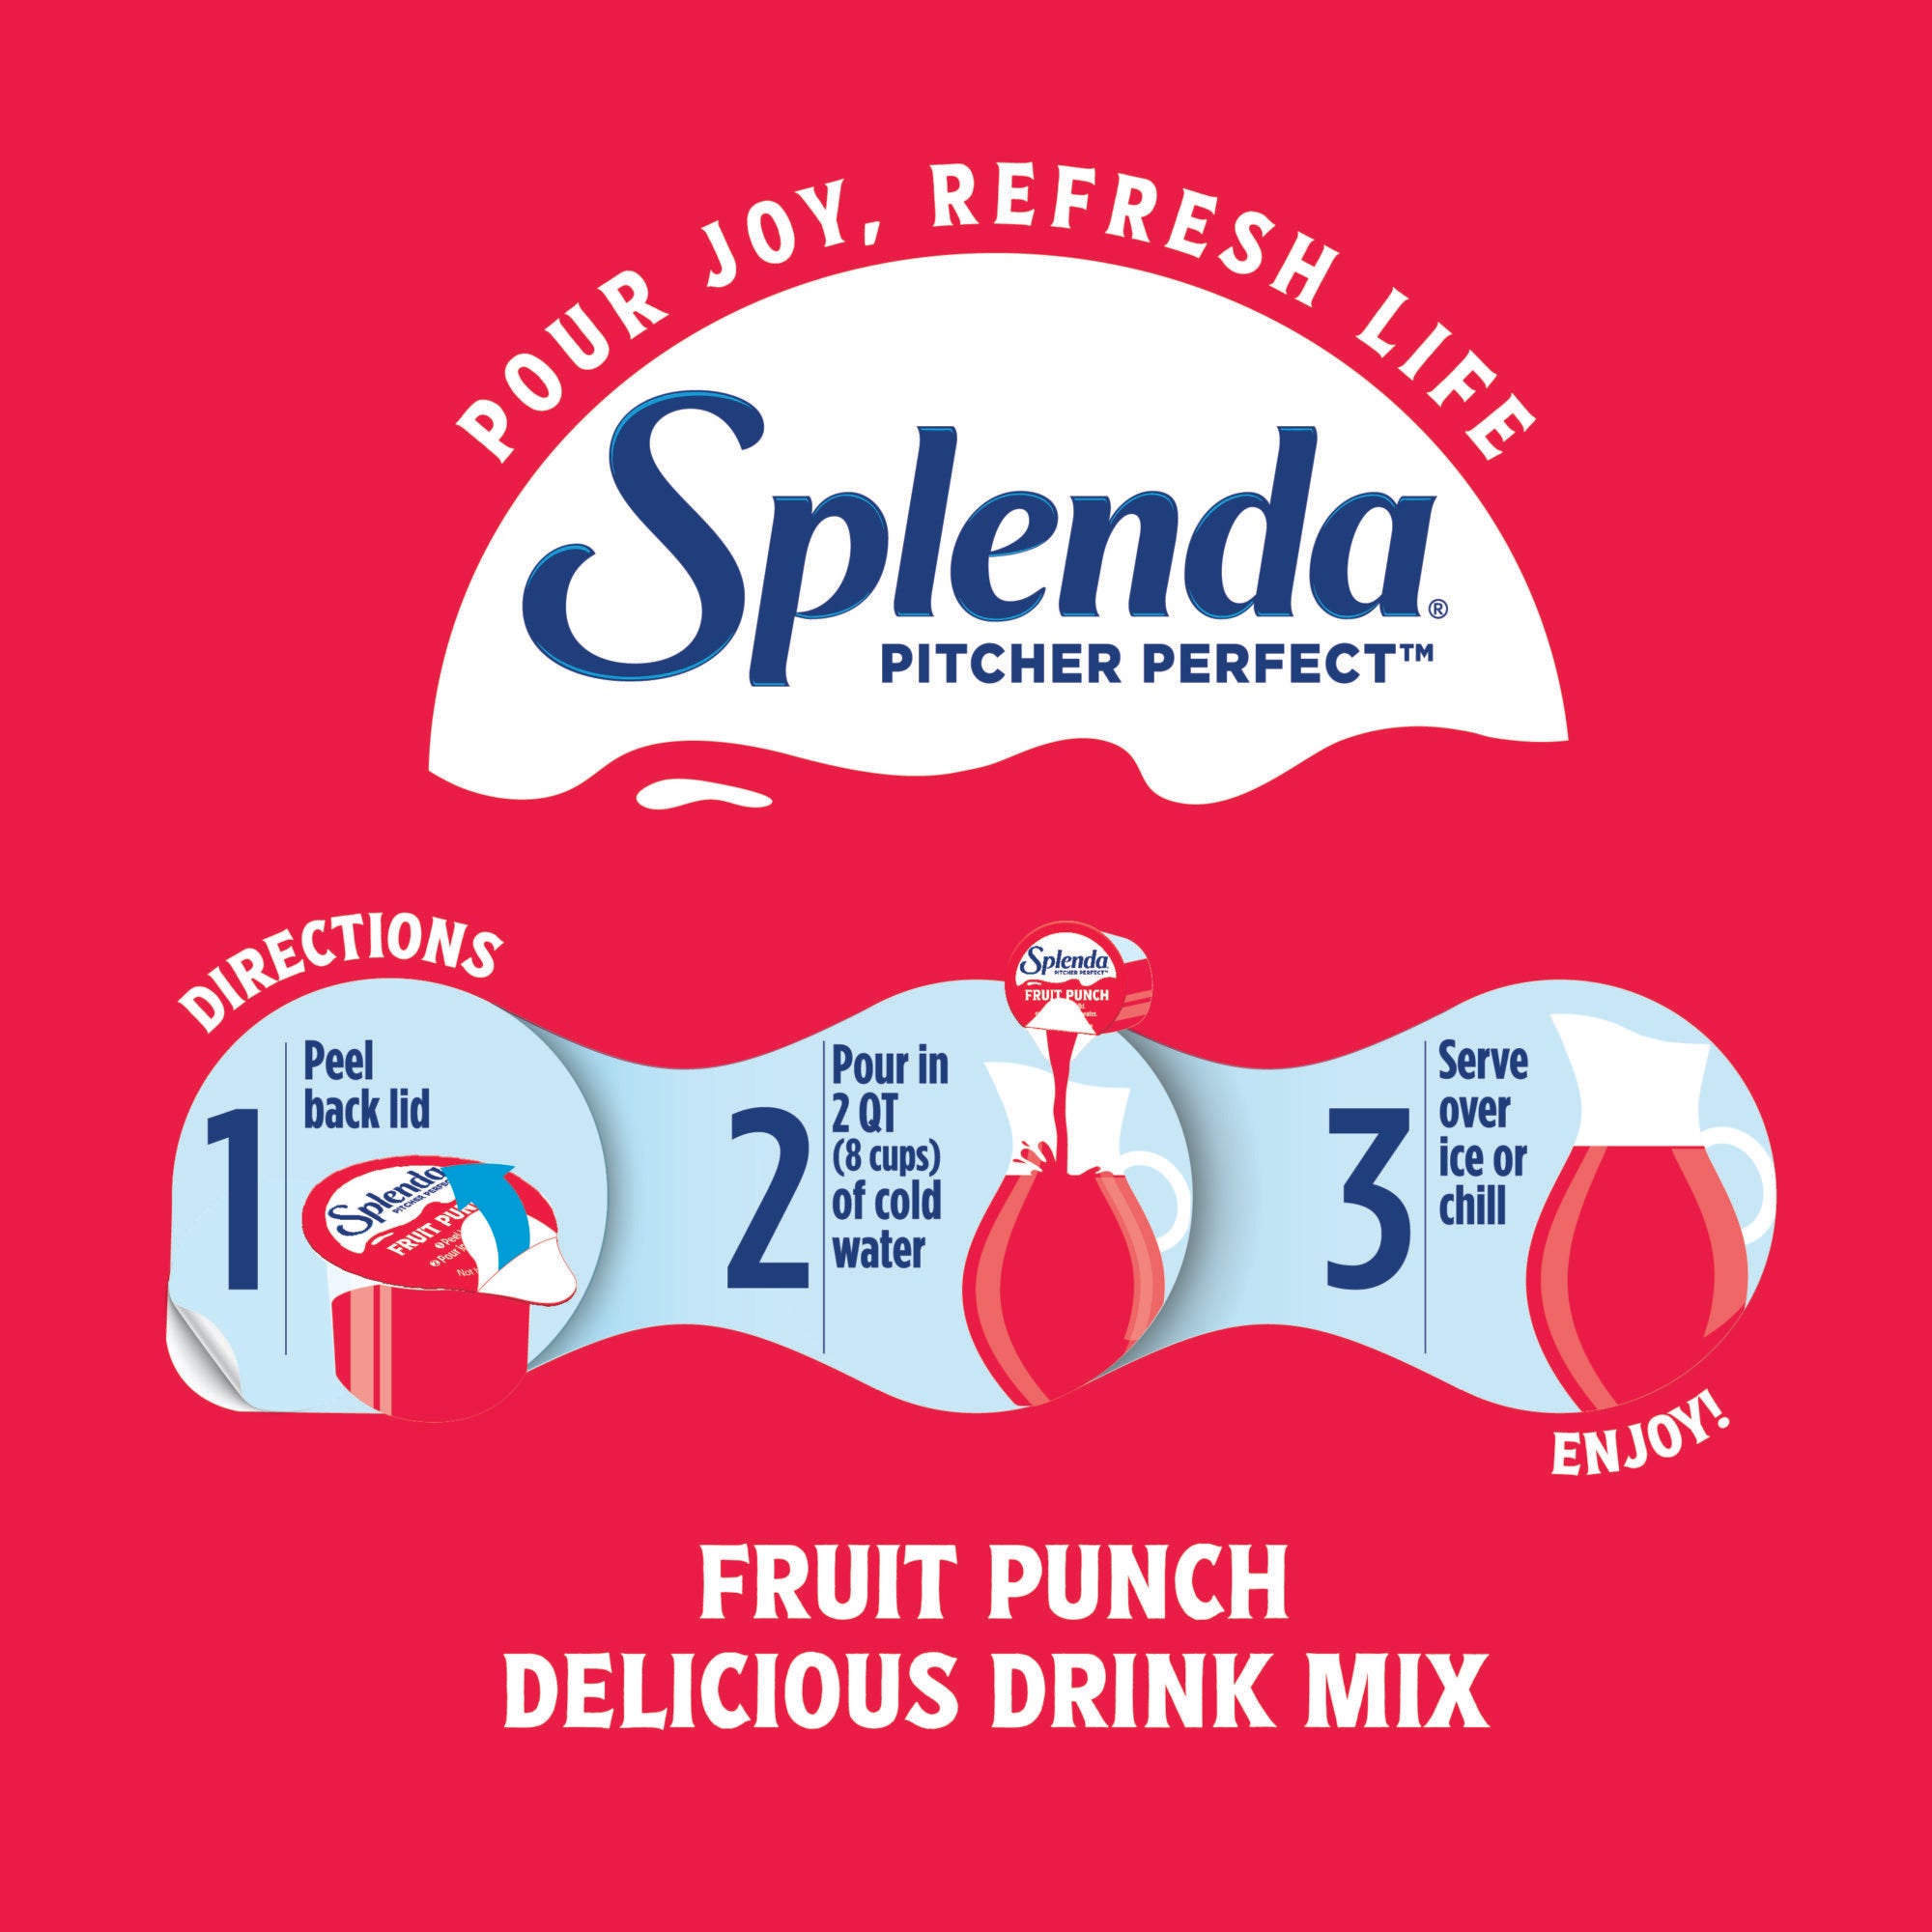 Splenda Pitcher Perfect Mezcla de Bebidas sin Azúcar, Refresco de Frutas, Instrucciones